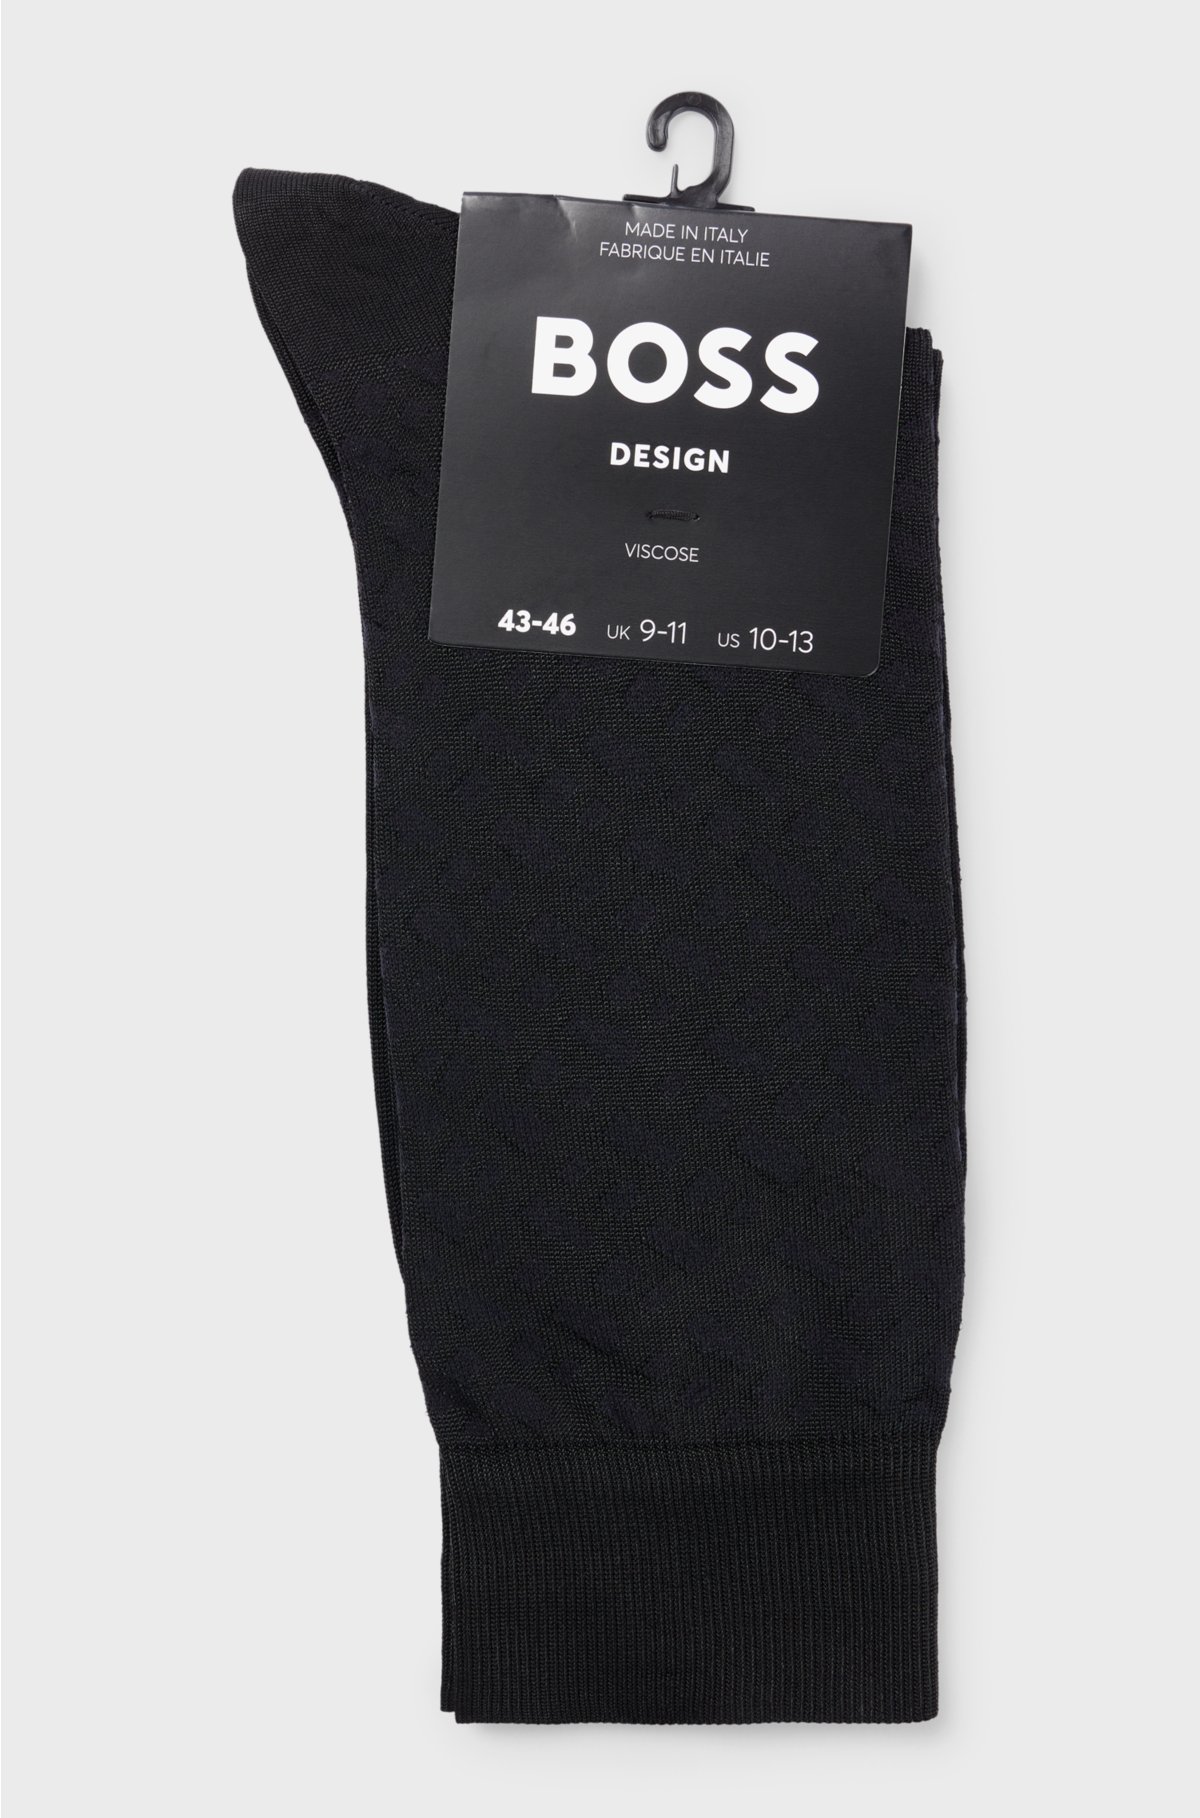 Regular-length socks with monogram pattern, Black